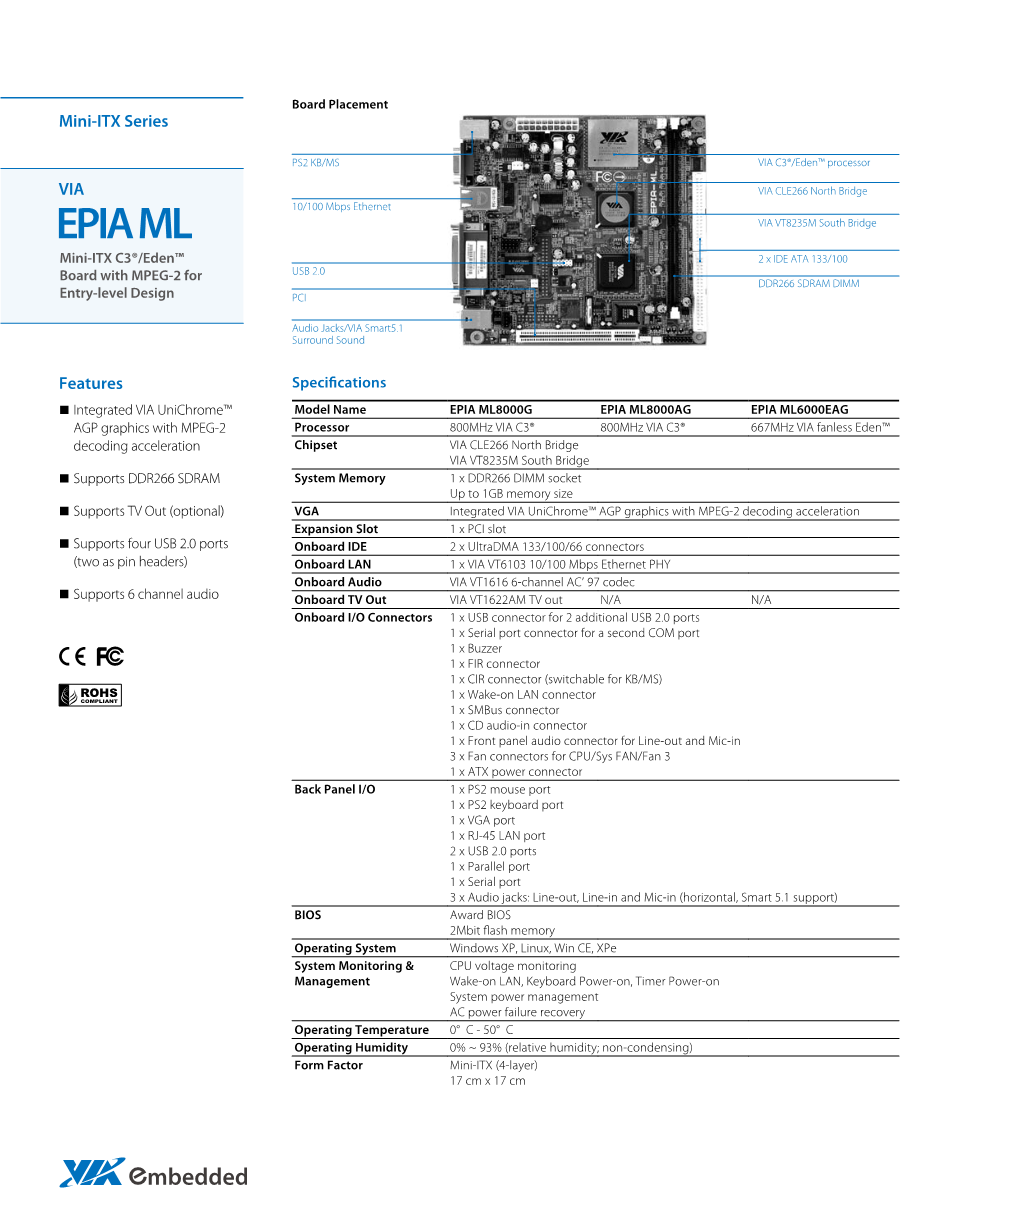 EPIA ML VIA VT8235M South Bridge Mini-ITX C3®/Eden™ 2 X IDE ATA 133/100 Board with MPEG-2 for USB 2.0 DDR266 SDRAM DIMM Entry-Level Design PCI